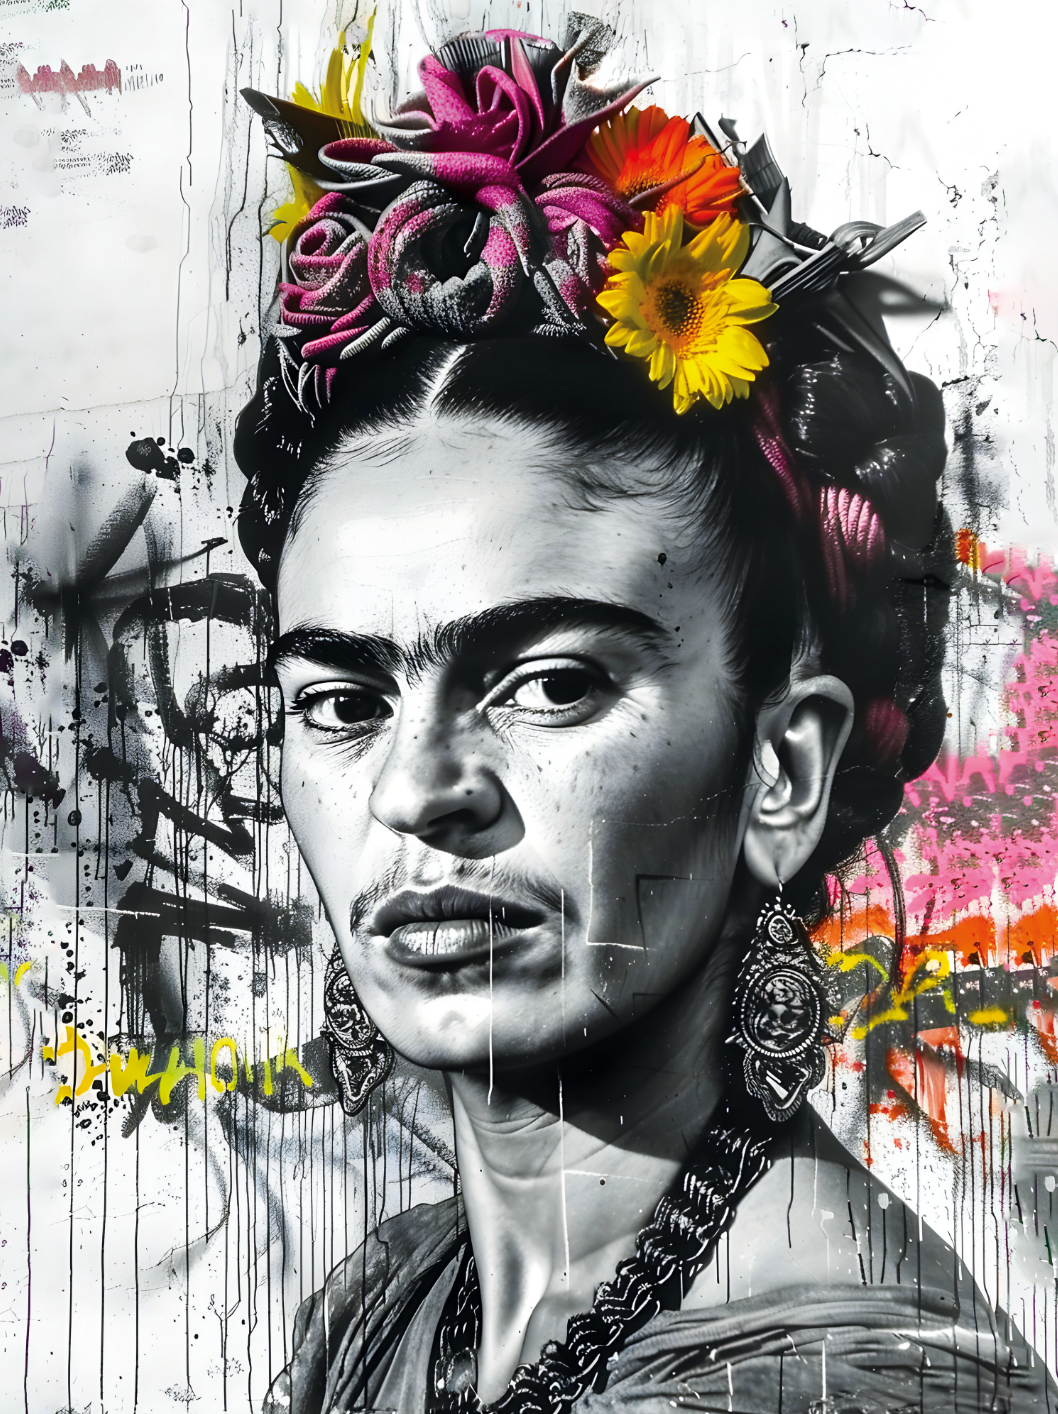 Tableau Noir et Blanc Frida Kahlo - Décoration Murale Élégante - Fabulartz.fr 